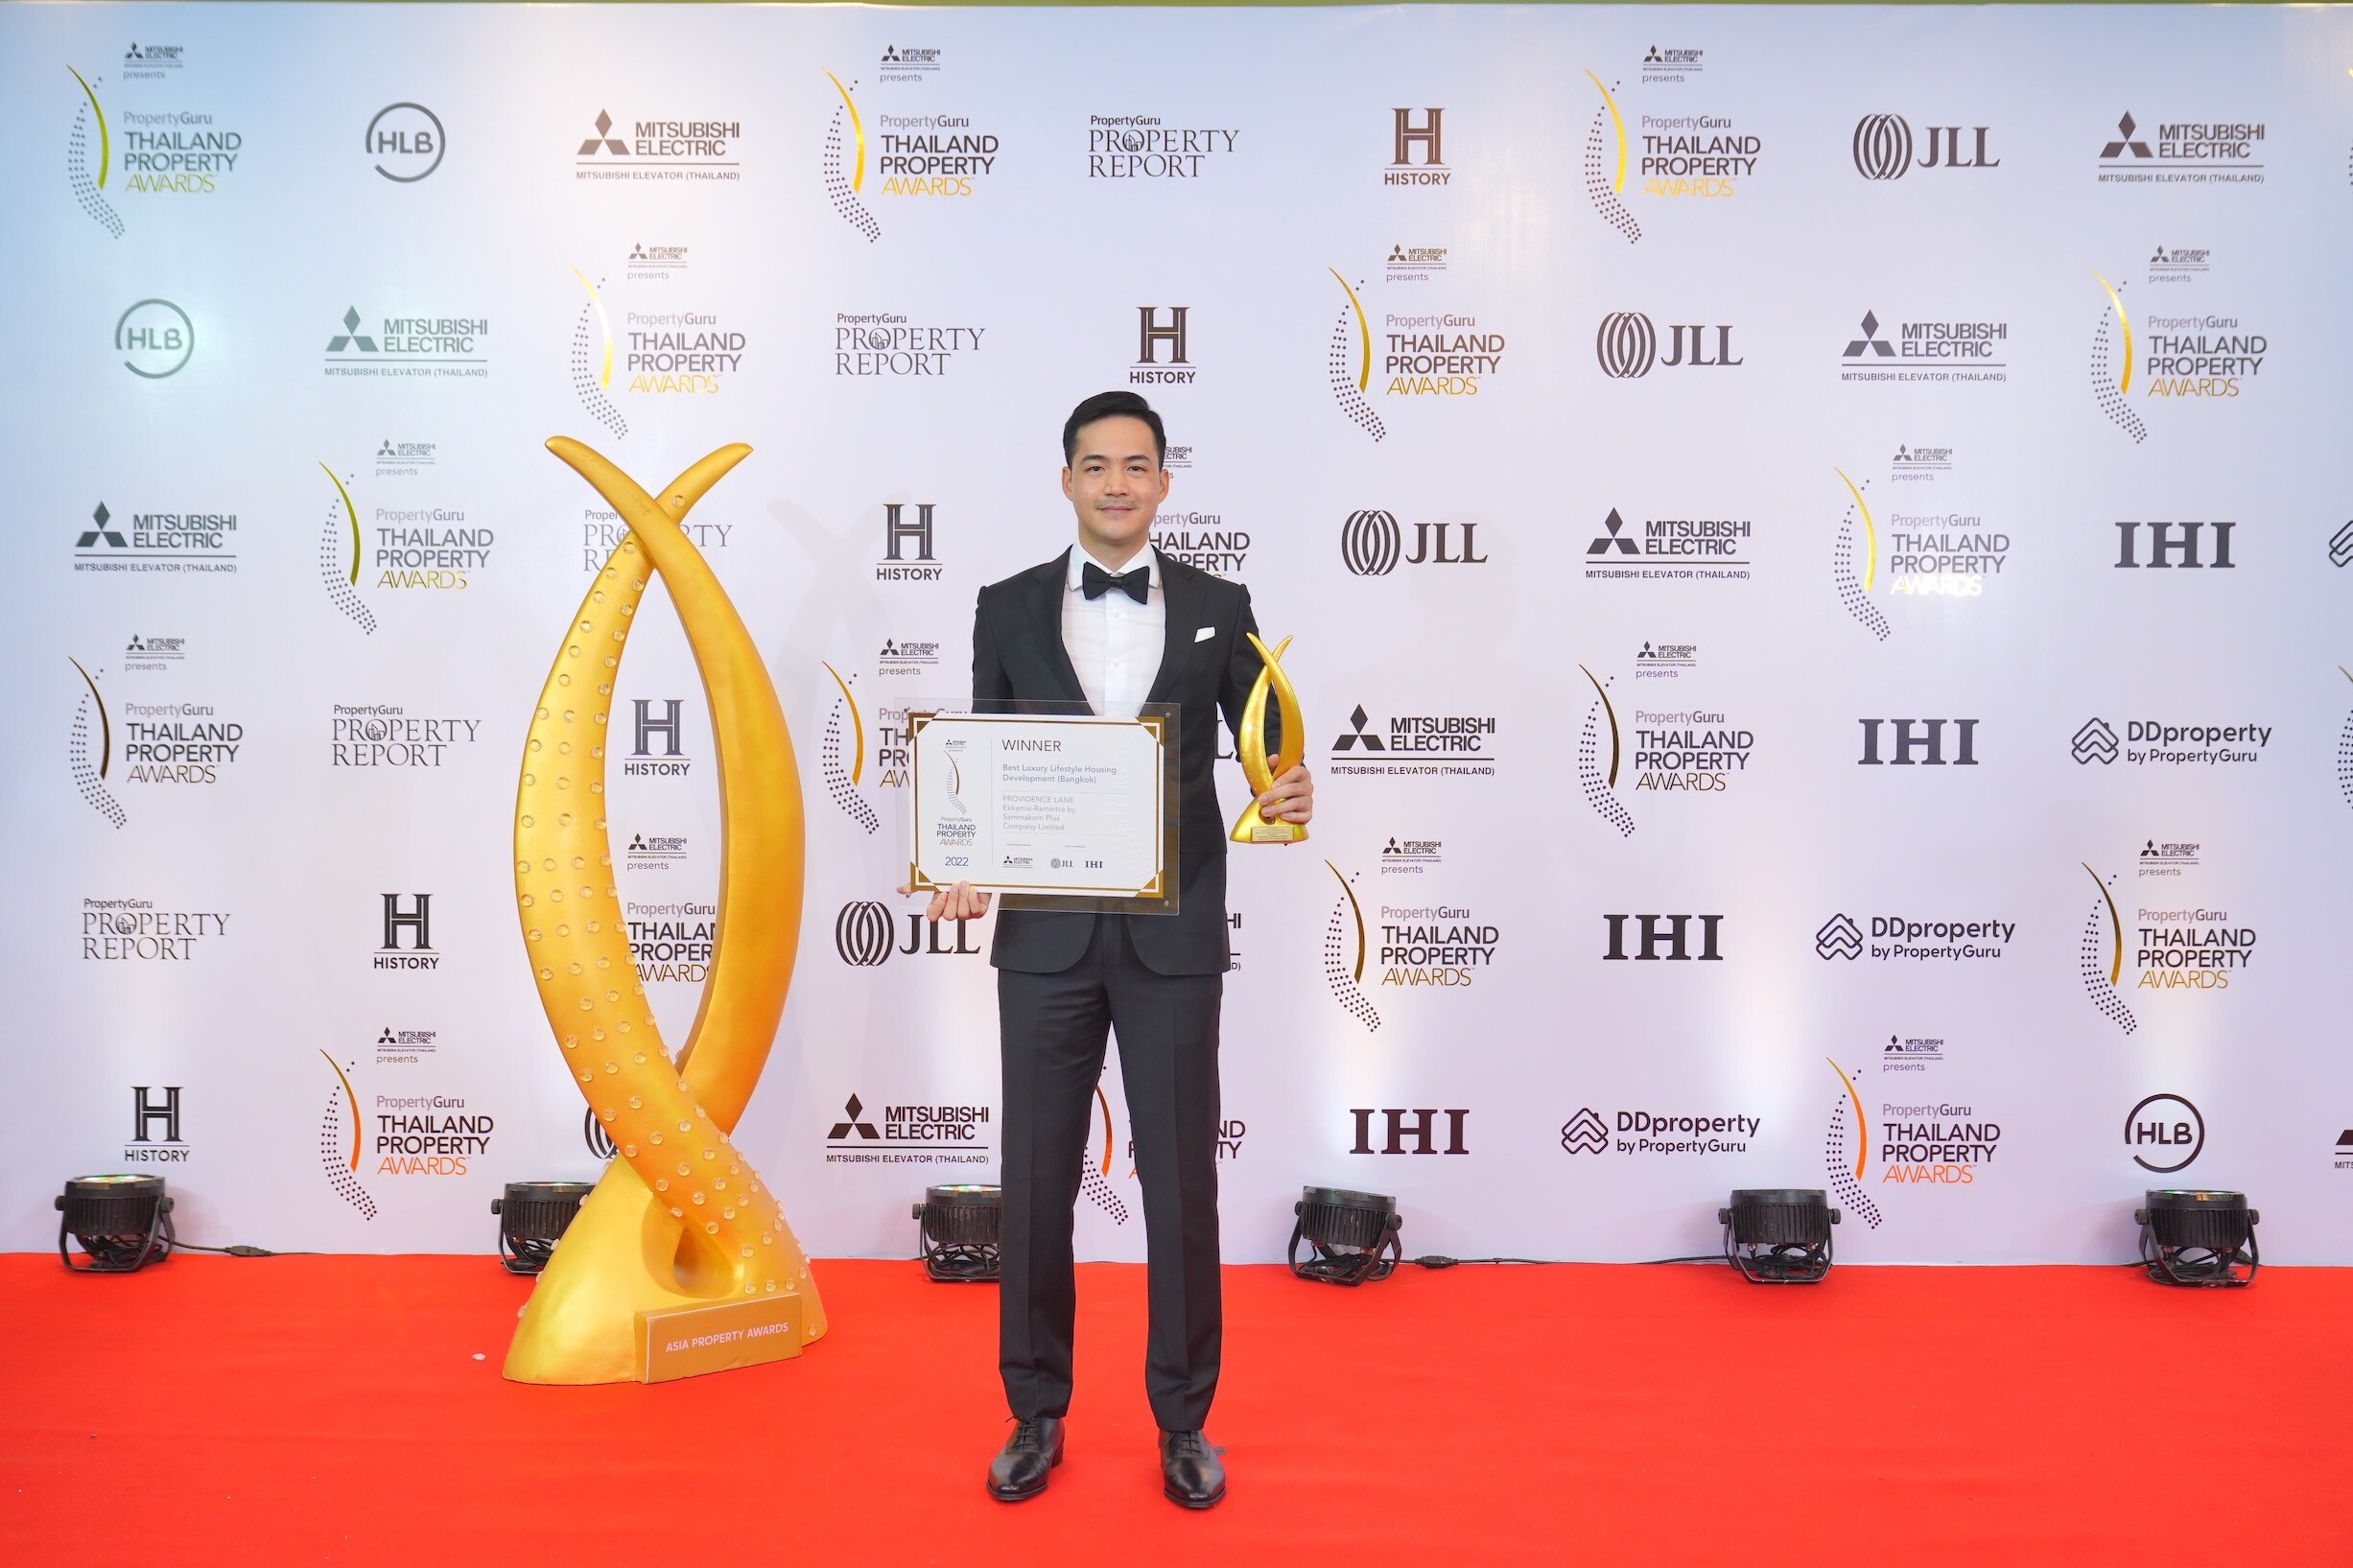 "สัมมากร" กวาด 4 รางวัลเวที PropertyGuru Thailand Property Awards ครั้งที่ 17 ตอกย้ำความสำเร็จ 2 แบรนด์ใหม่ "Providence Lane และ Park Heritage Pattanakarn"